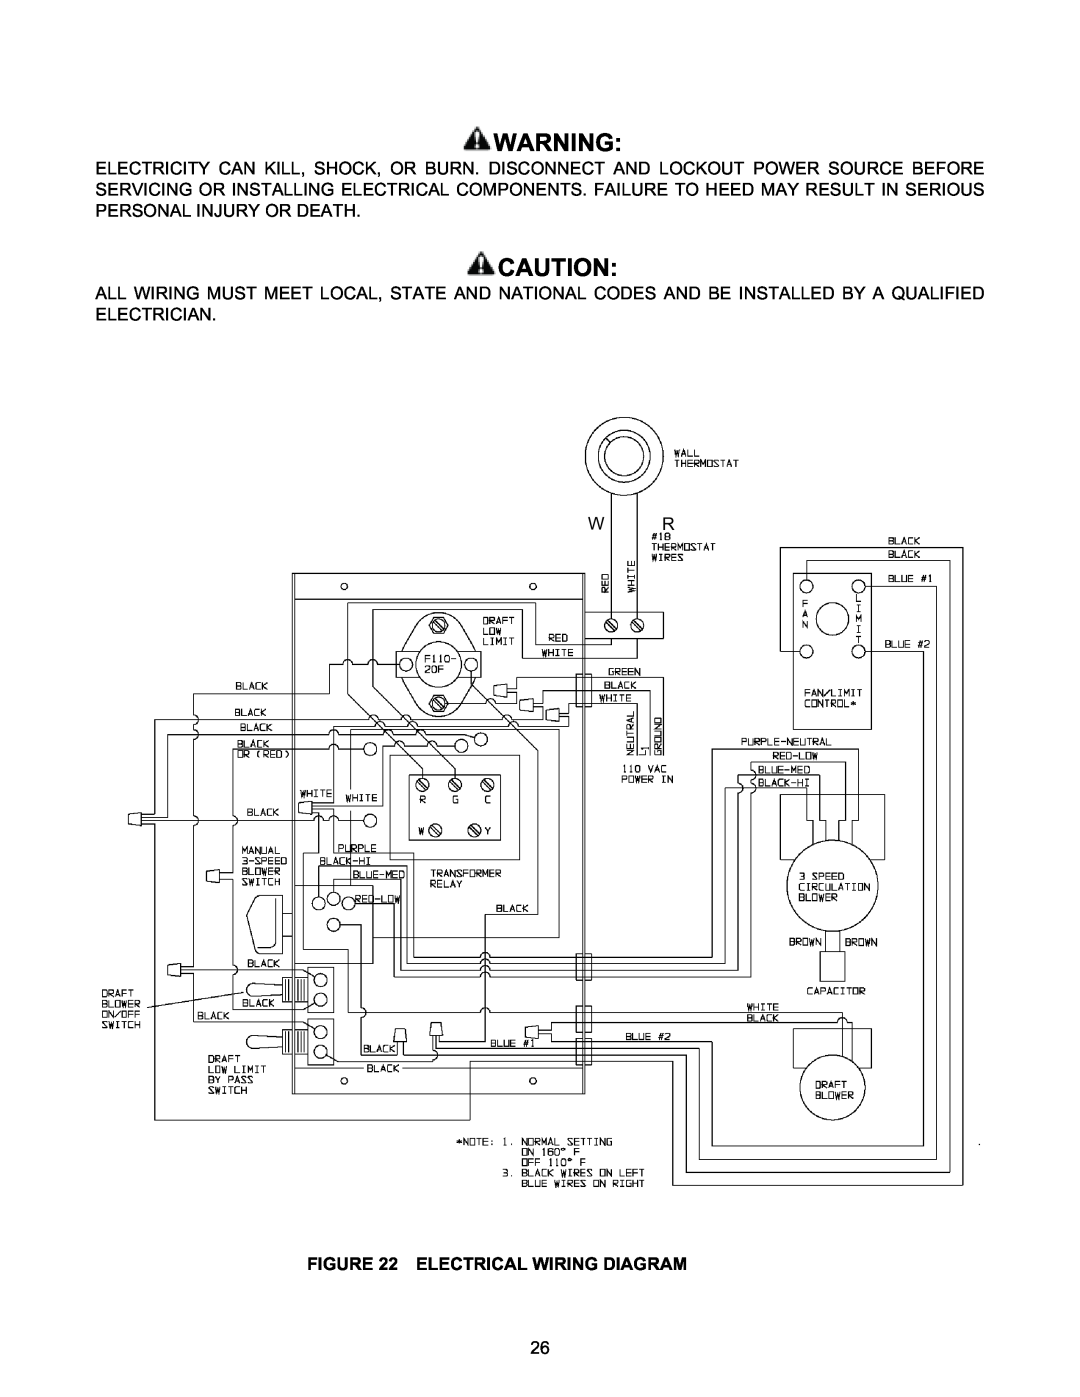 Meyer 4000, 526, 2900 manual Electrical Wiring Diagram 